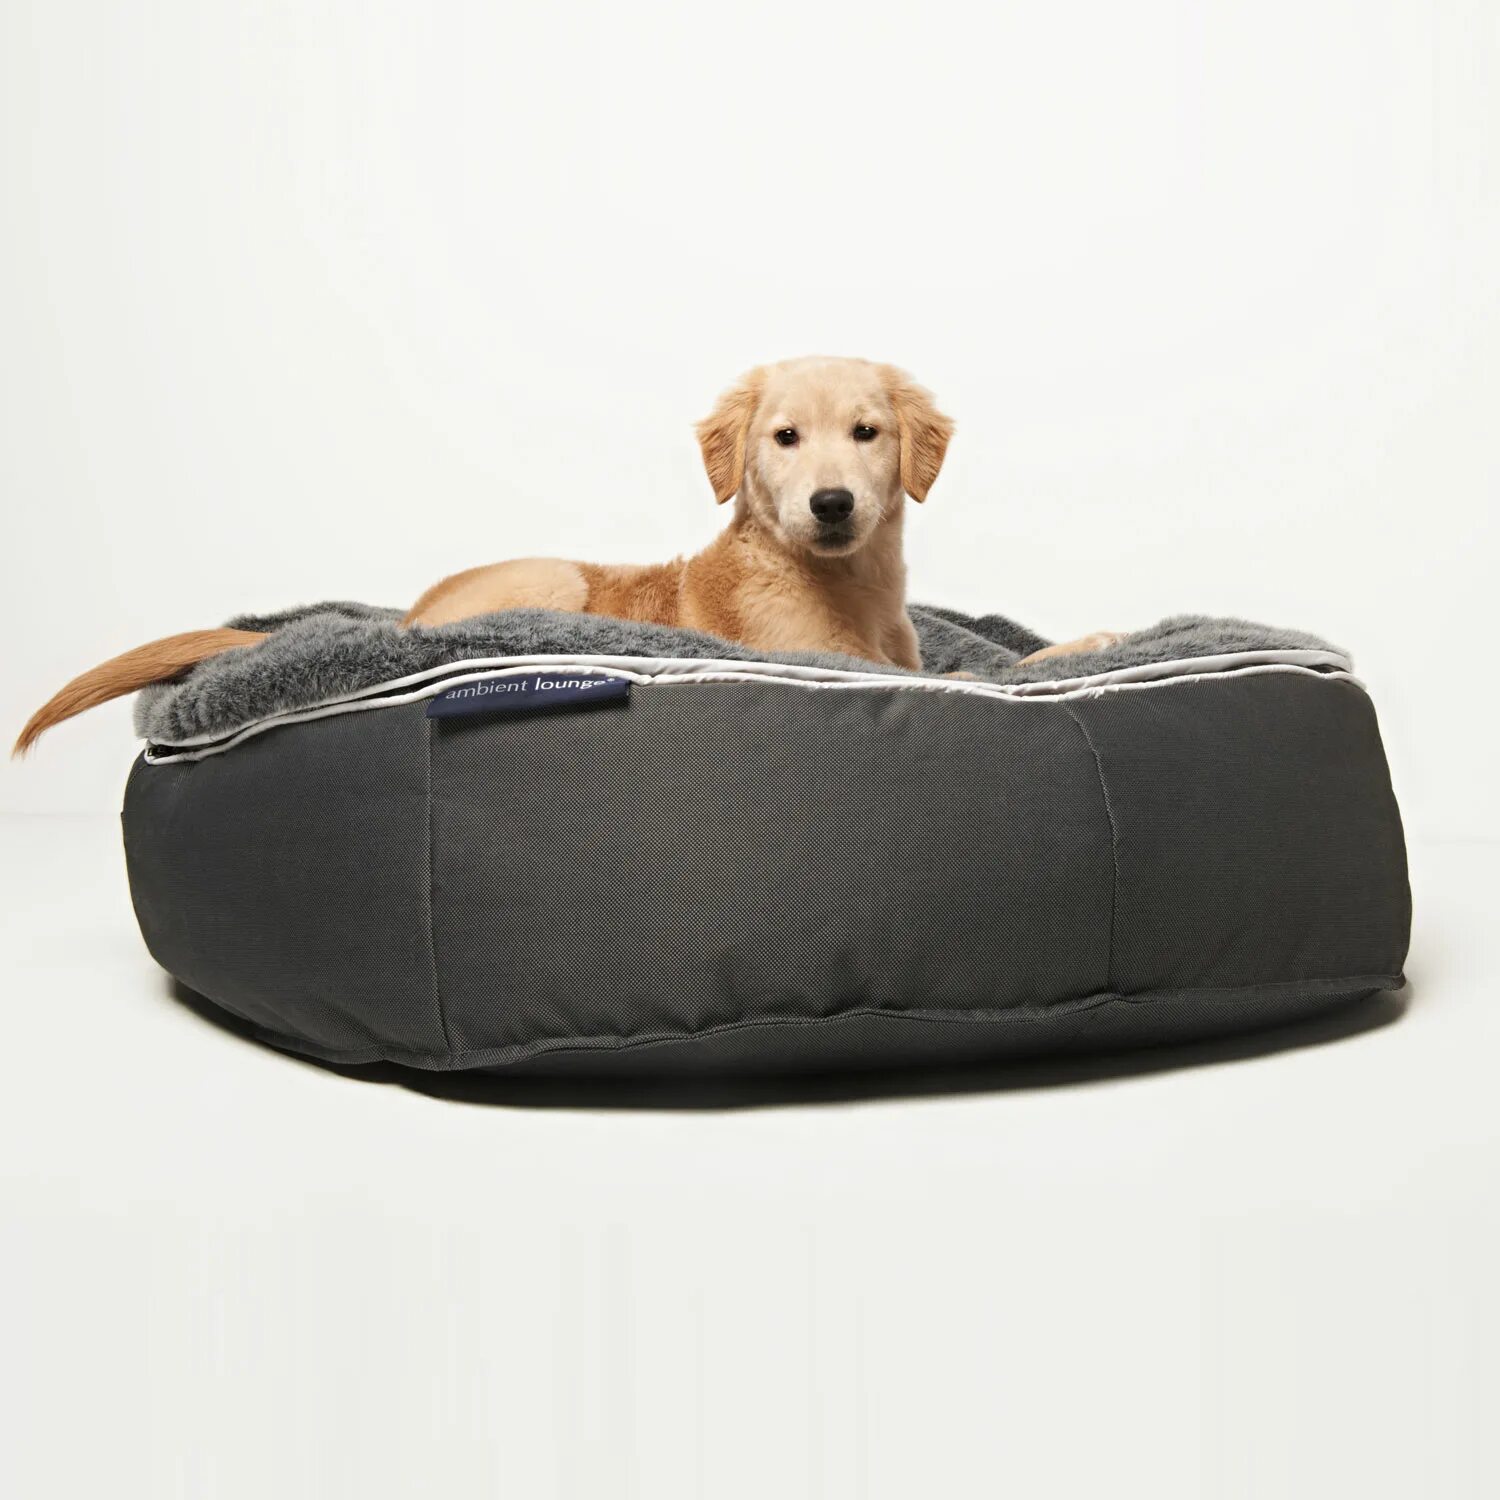 Ambient Lounge лежак для собаки. Лежанка Nunbell 267369. Лежанка для собак Pet Lounge. Лежанка для человека с матрасом. Лежанка pets